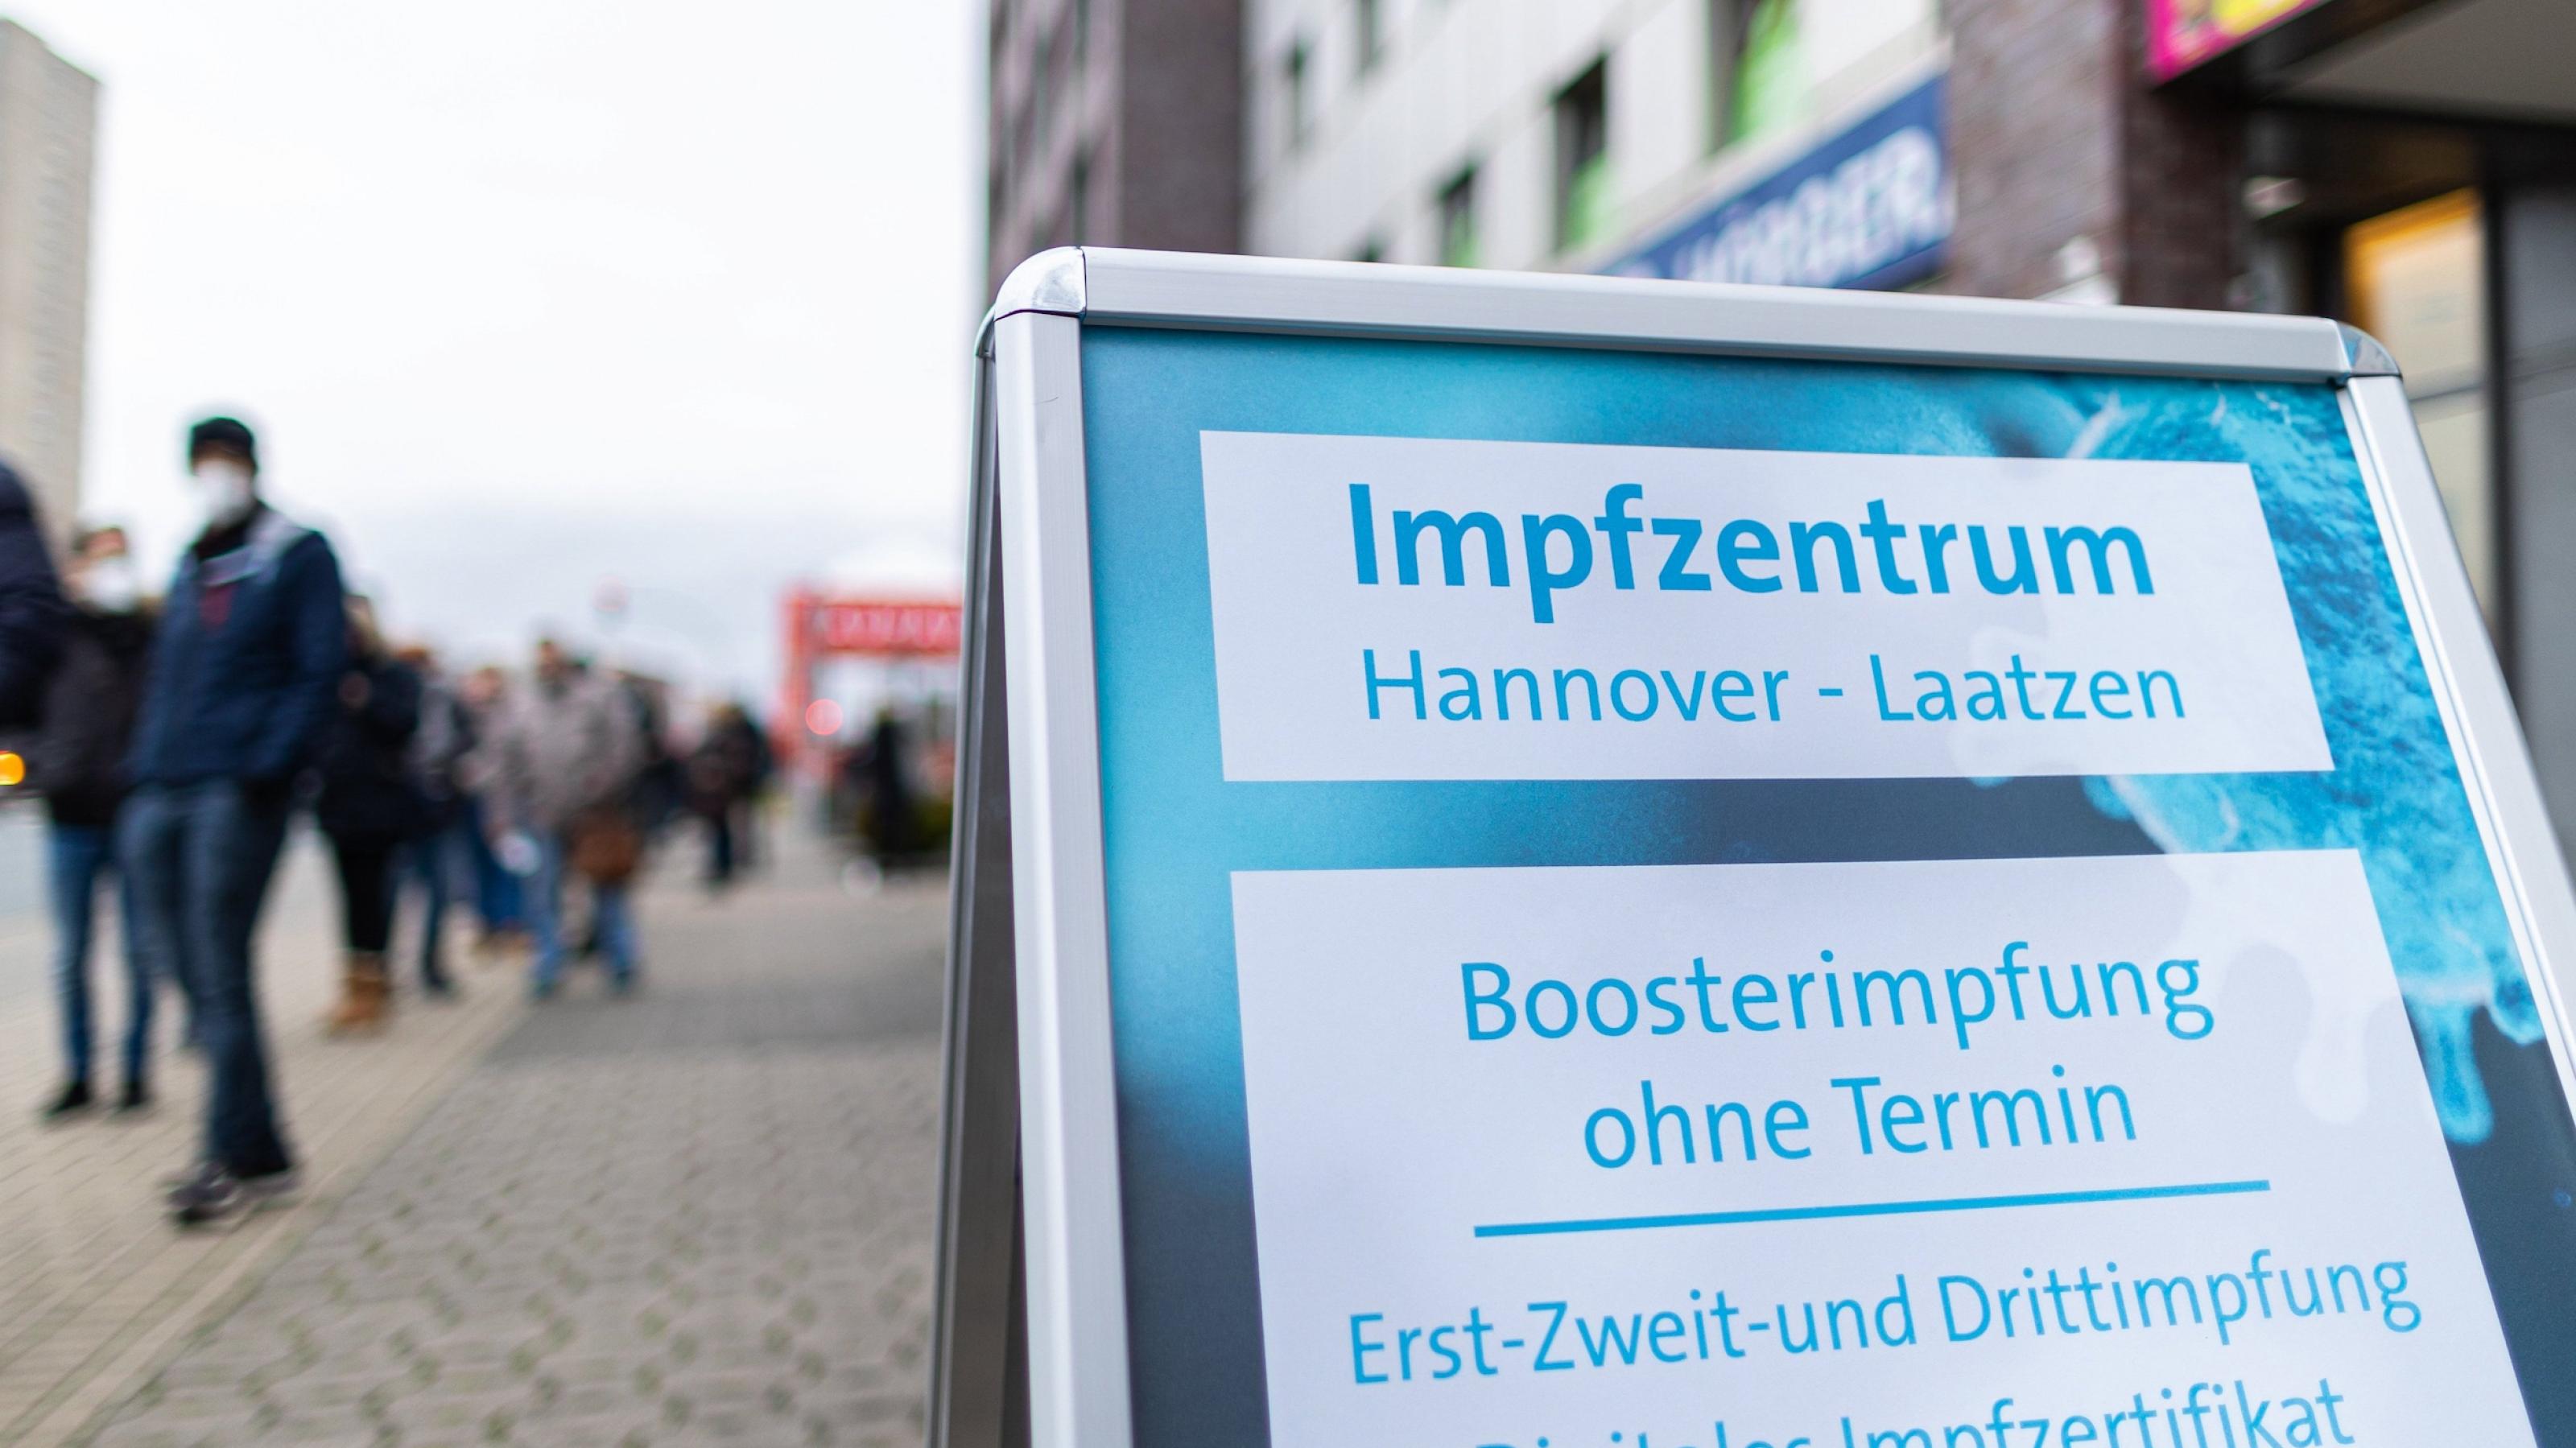 Menschen warten in einer langen Schlange vor dem Eingang zum Impfzentrum. Auf dem Schild werden Boosterimpfungen ohne Termin in Hannover angeboten.